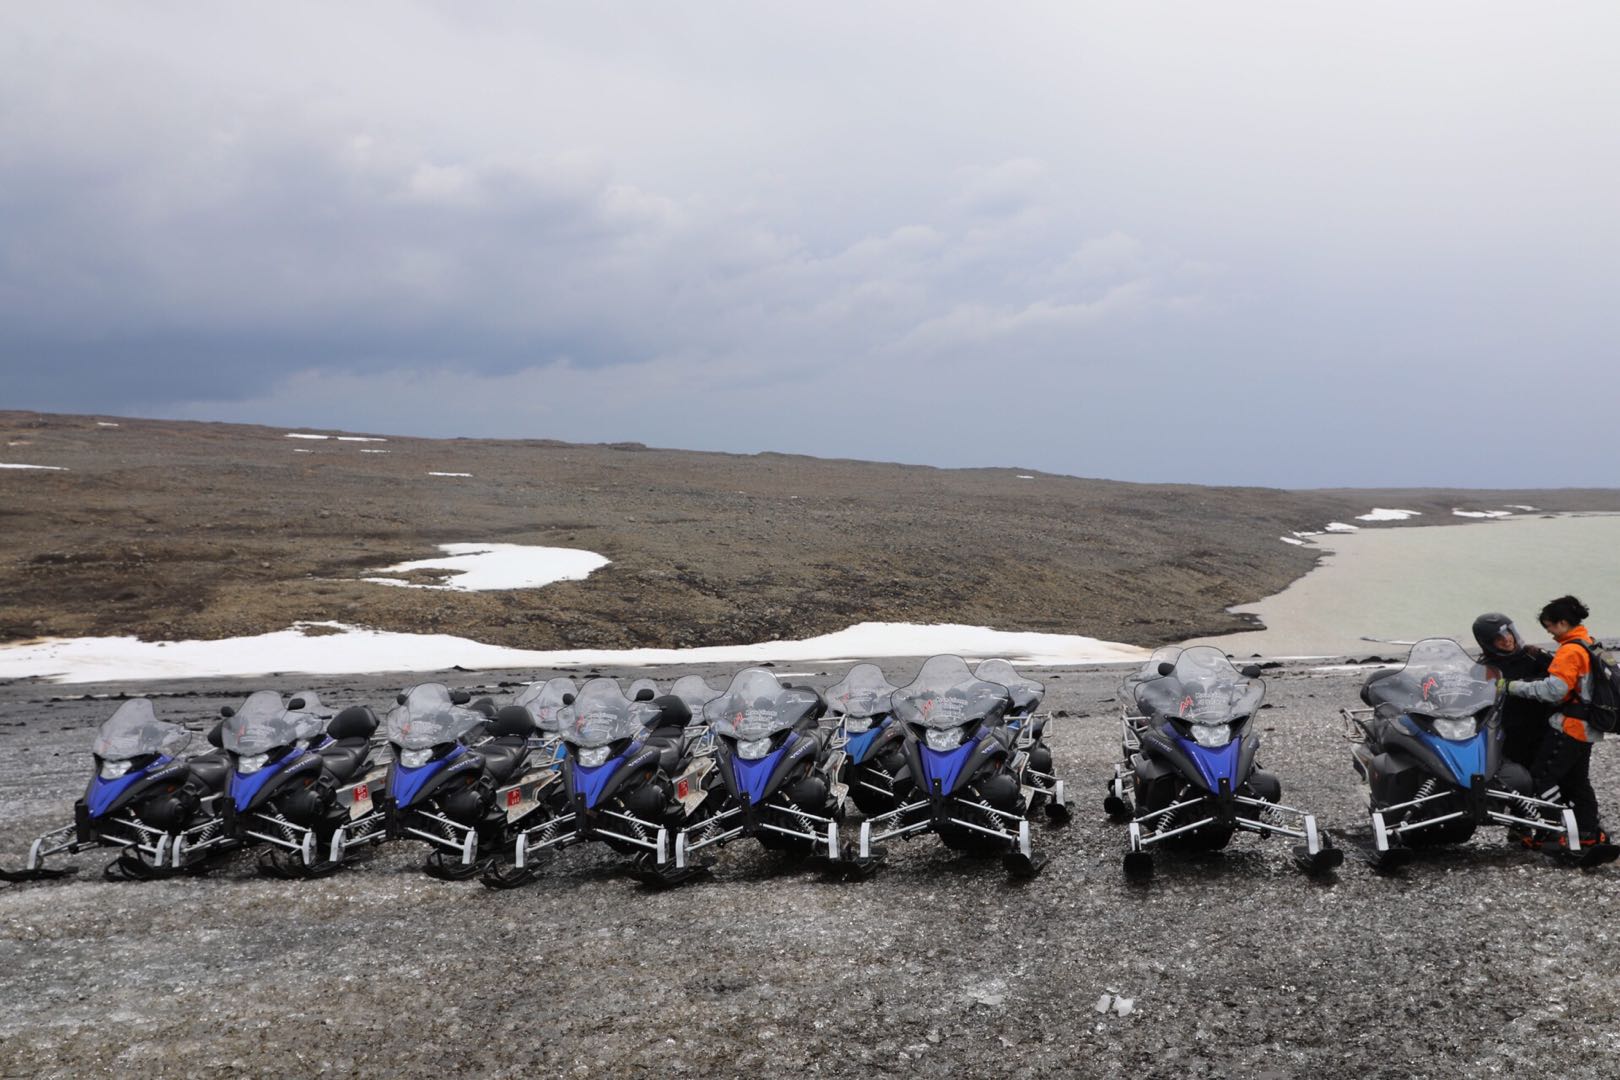 冰島旅行團體驗| 朗格冰川雪地電單車(Snowmobile)---冰川上的「狂野 